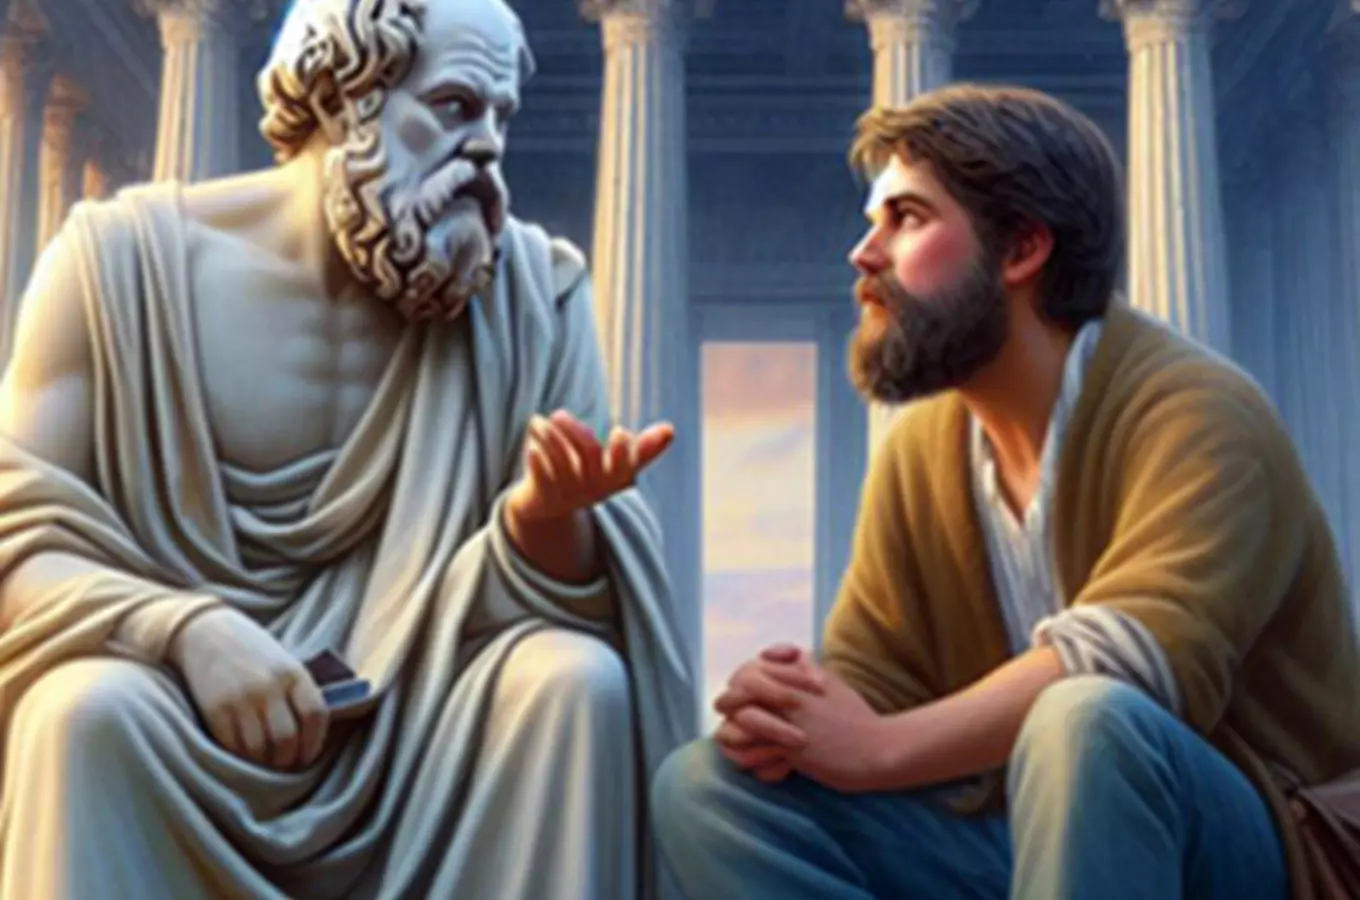 Cesta srdce: Setkání s Buddhou a Sokratem